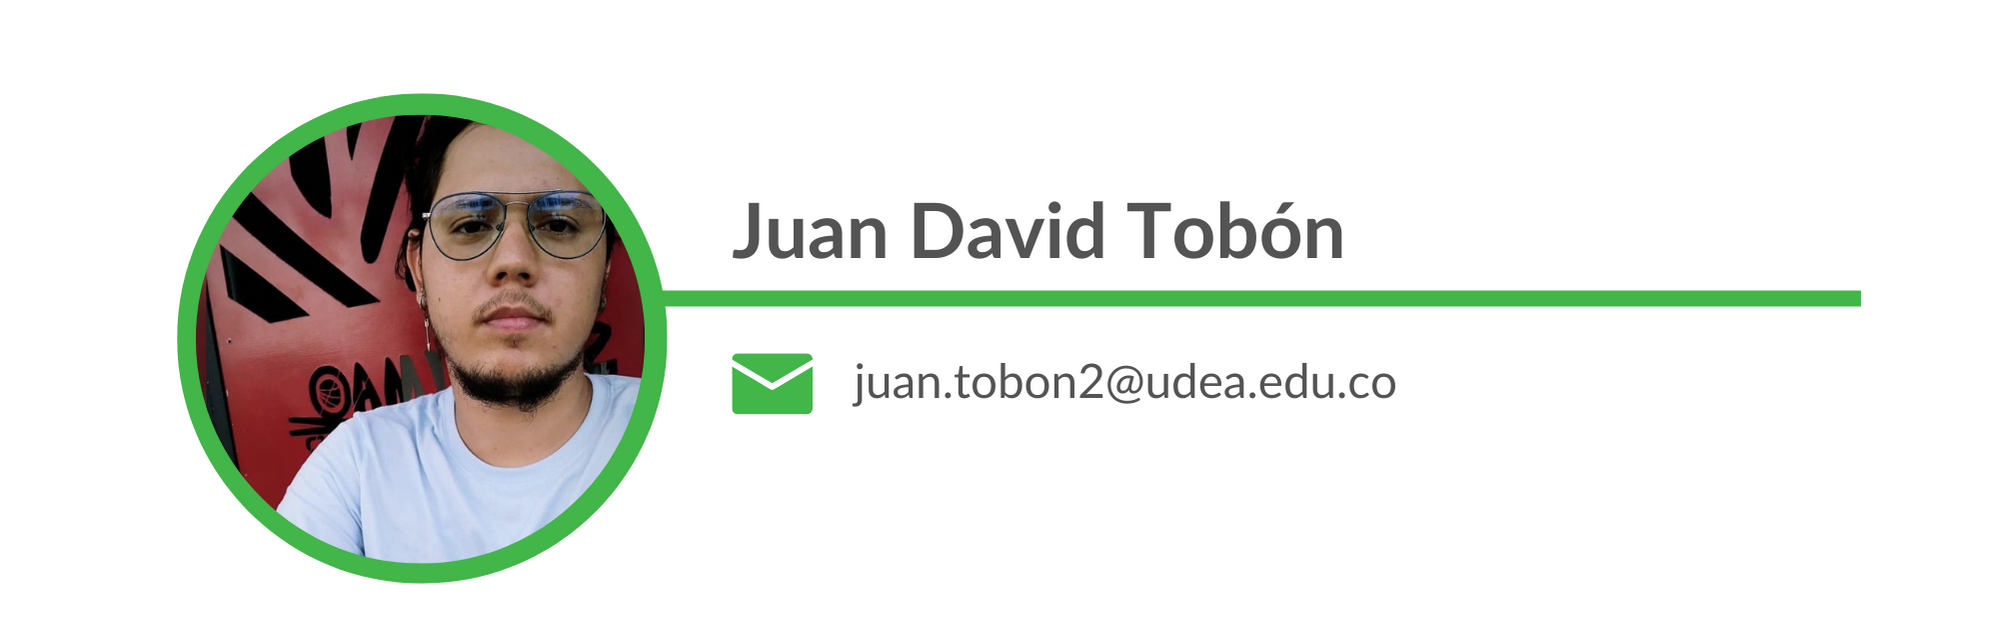 Juan David Tobón. Email: juan.tobon2@udea.edu.co